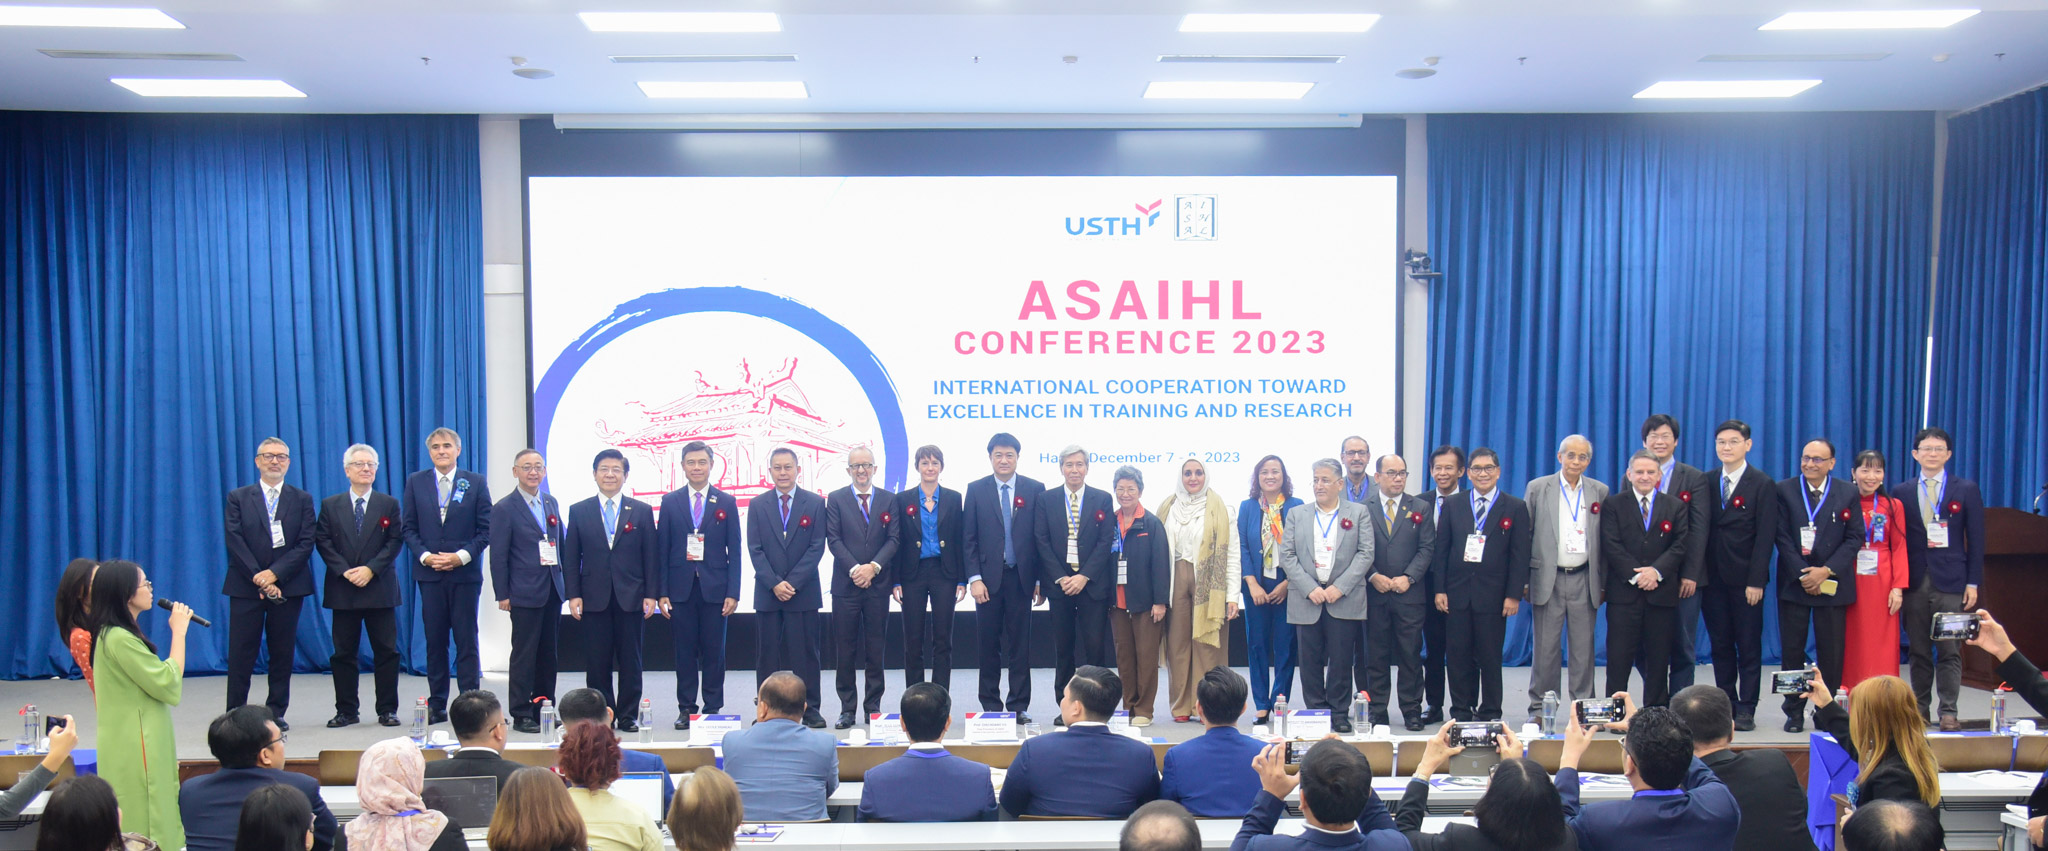 Khai mạc Hội thảo quốc tế của Hiệp hội các trường đại học Đông Nam Á (ASAIHL) 2023